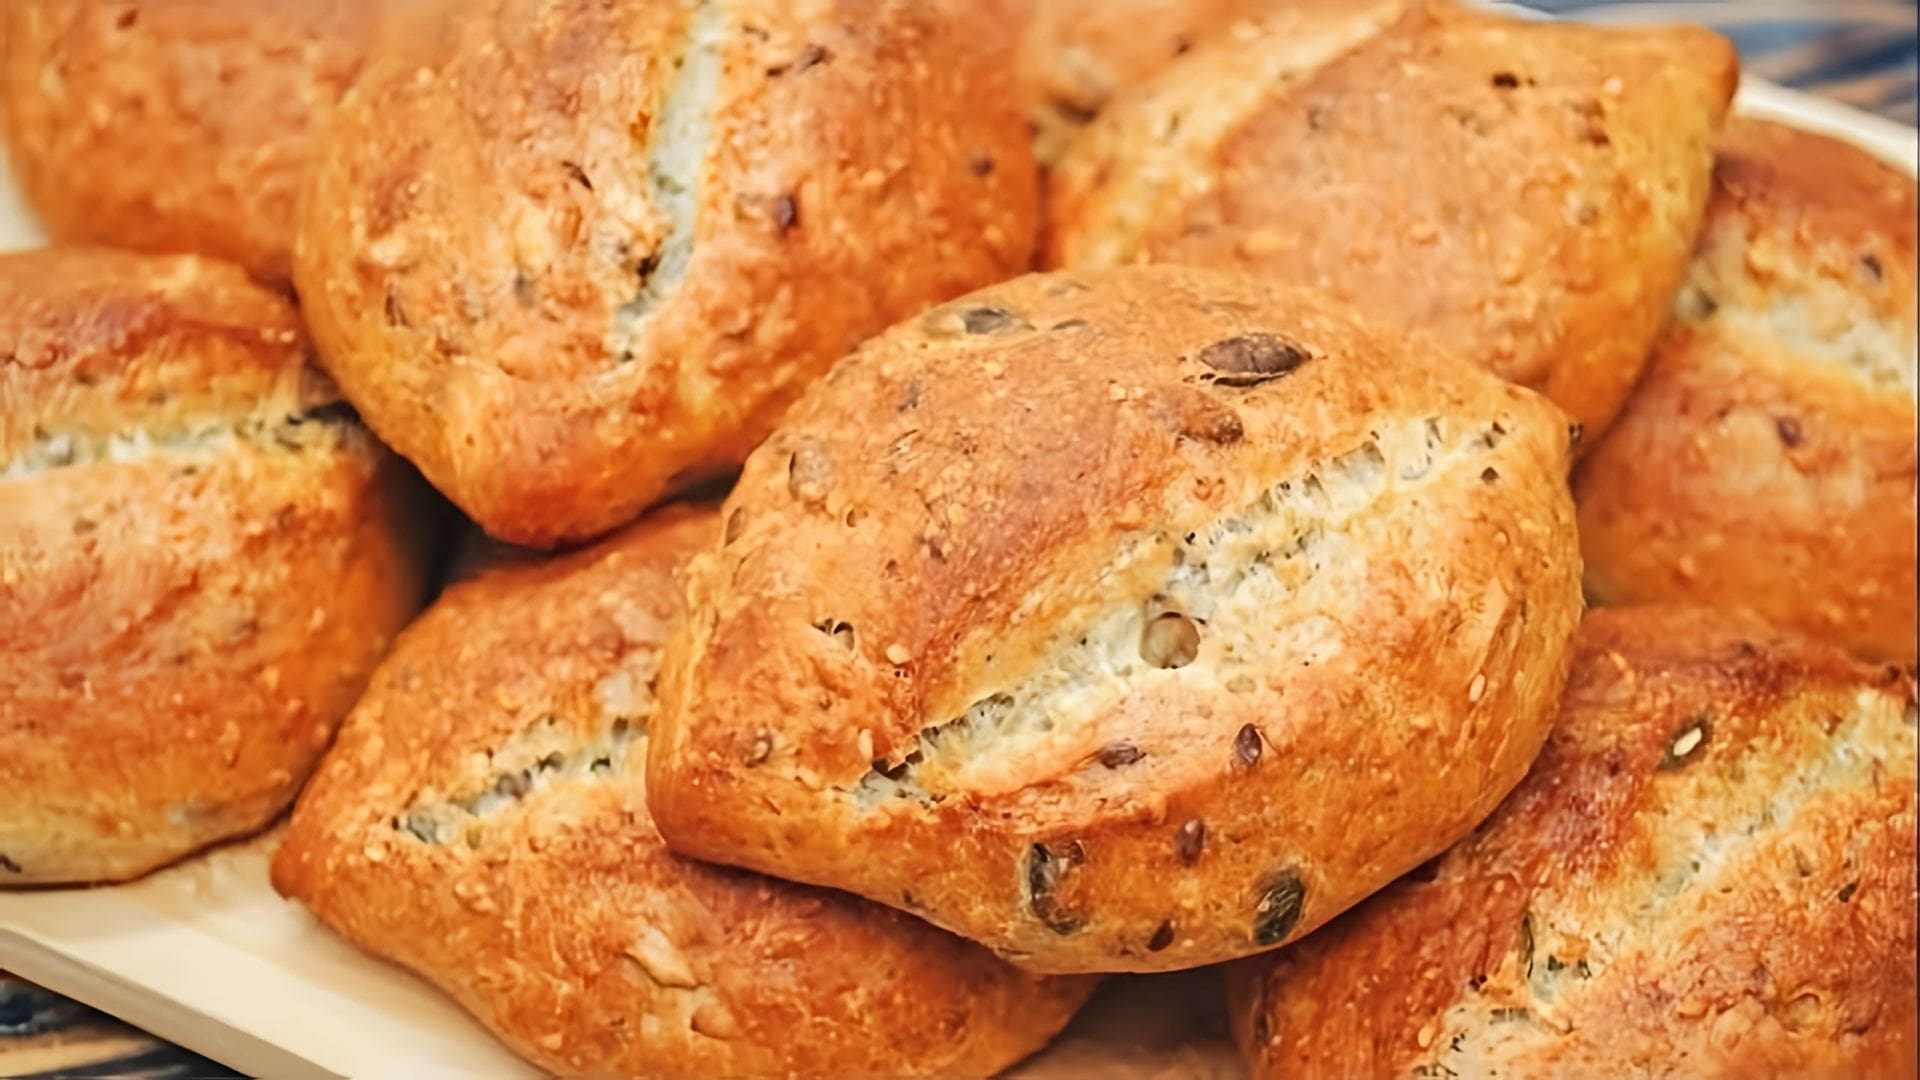 Видео рецепт для приготовления многозерновых хлебных палочек, которые являются здоровой и вкусной альтернативой покупному хлебу